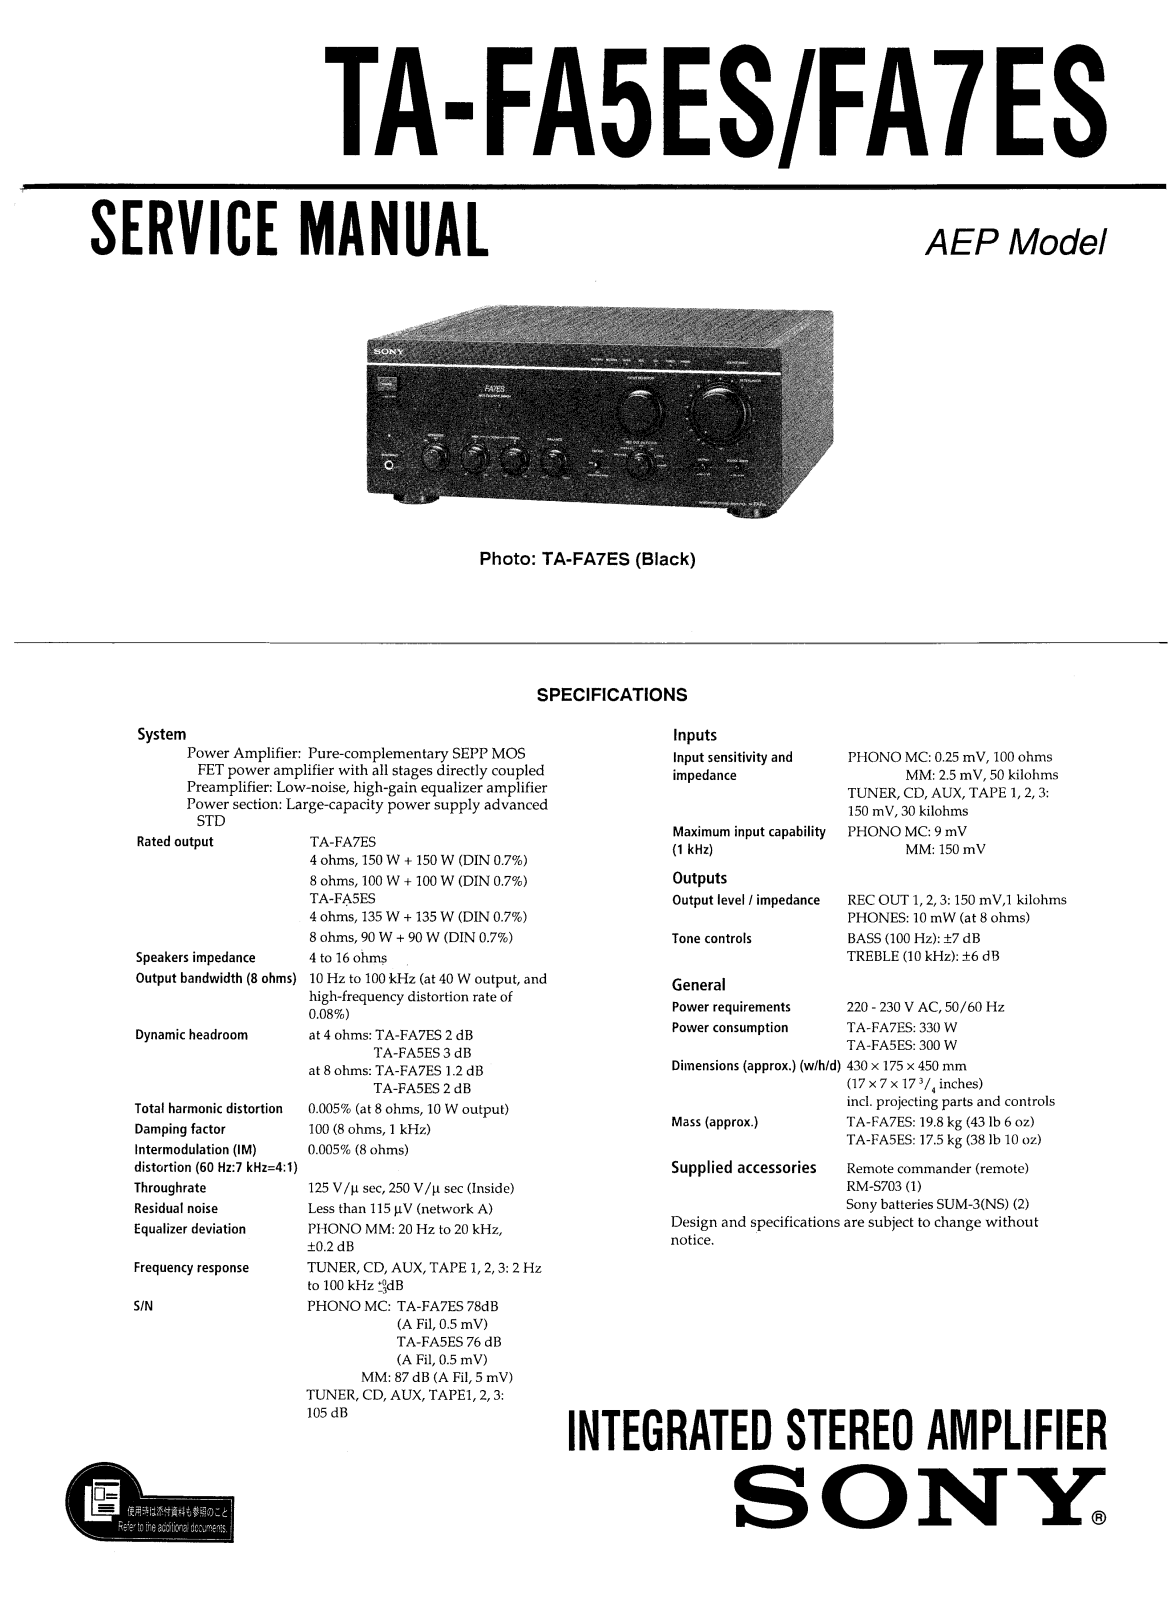 Sony TAFA-7-ES Service manual